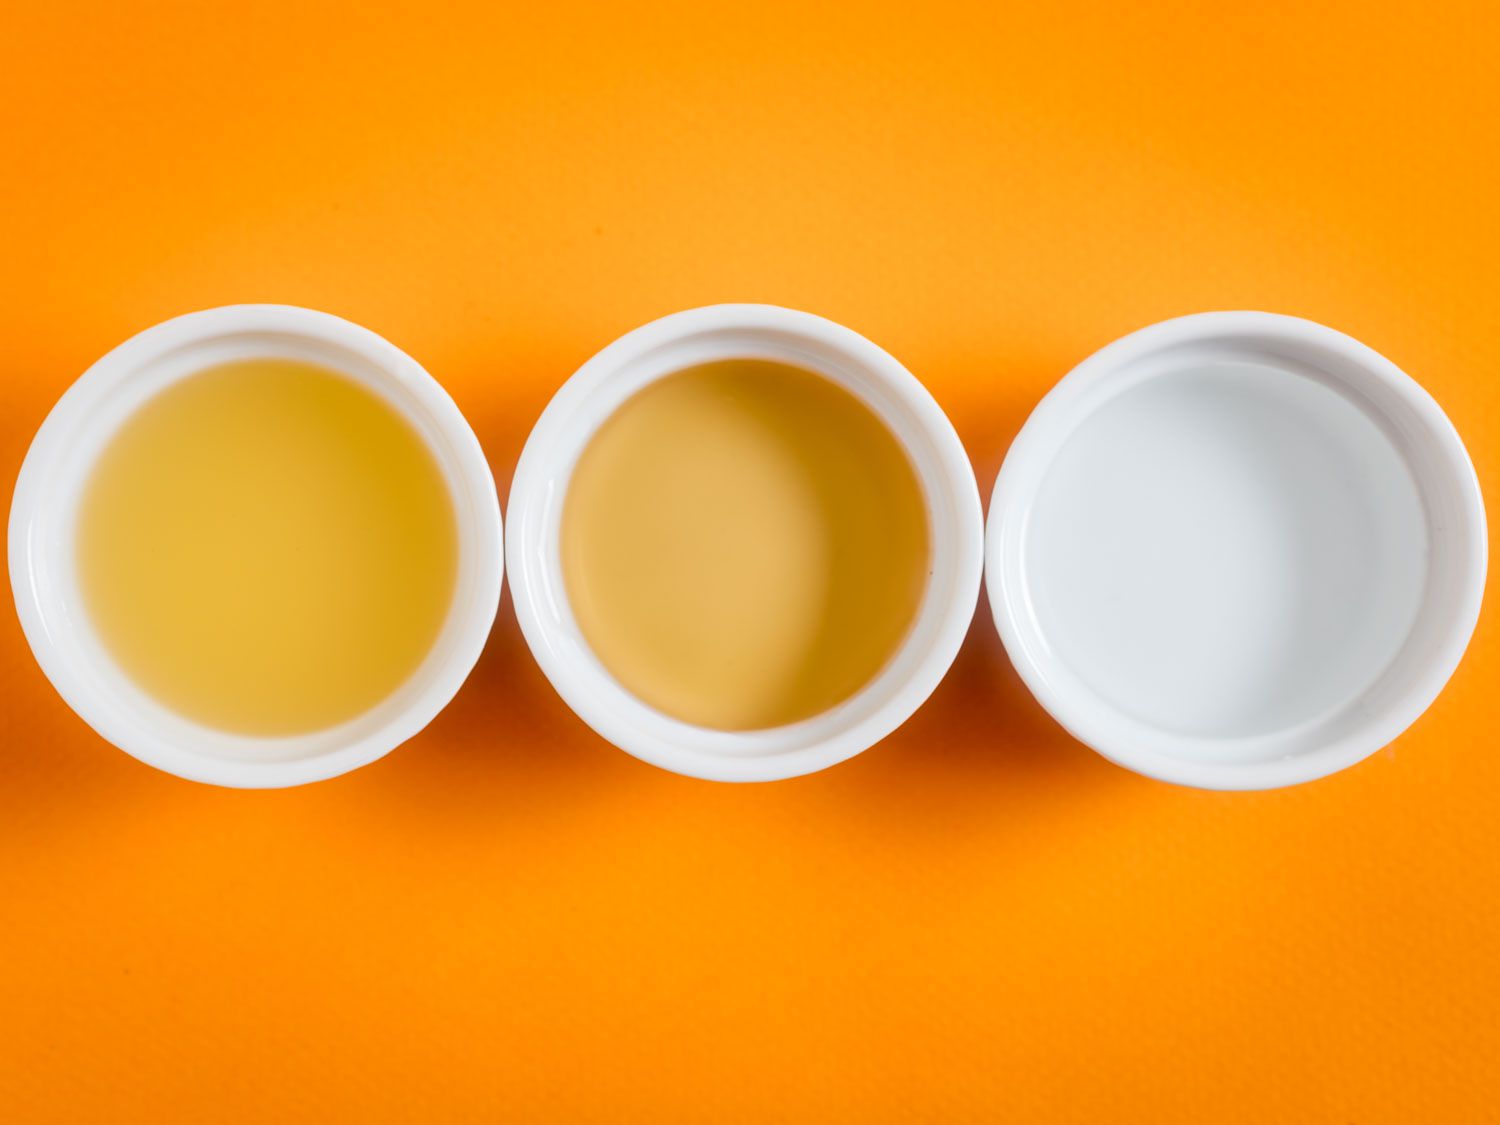 头顶的镜头是三个装着不同醋的白色小杯，背景是橙色